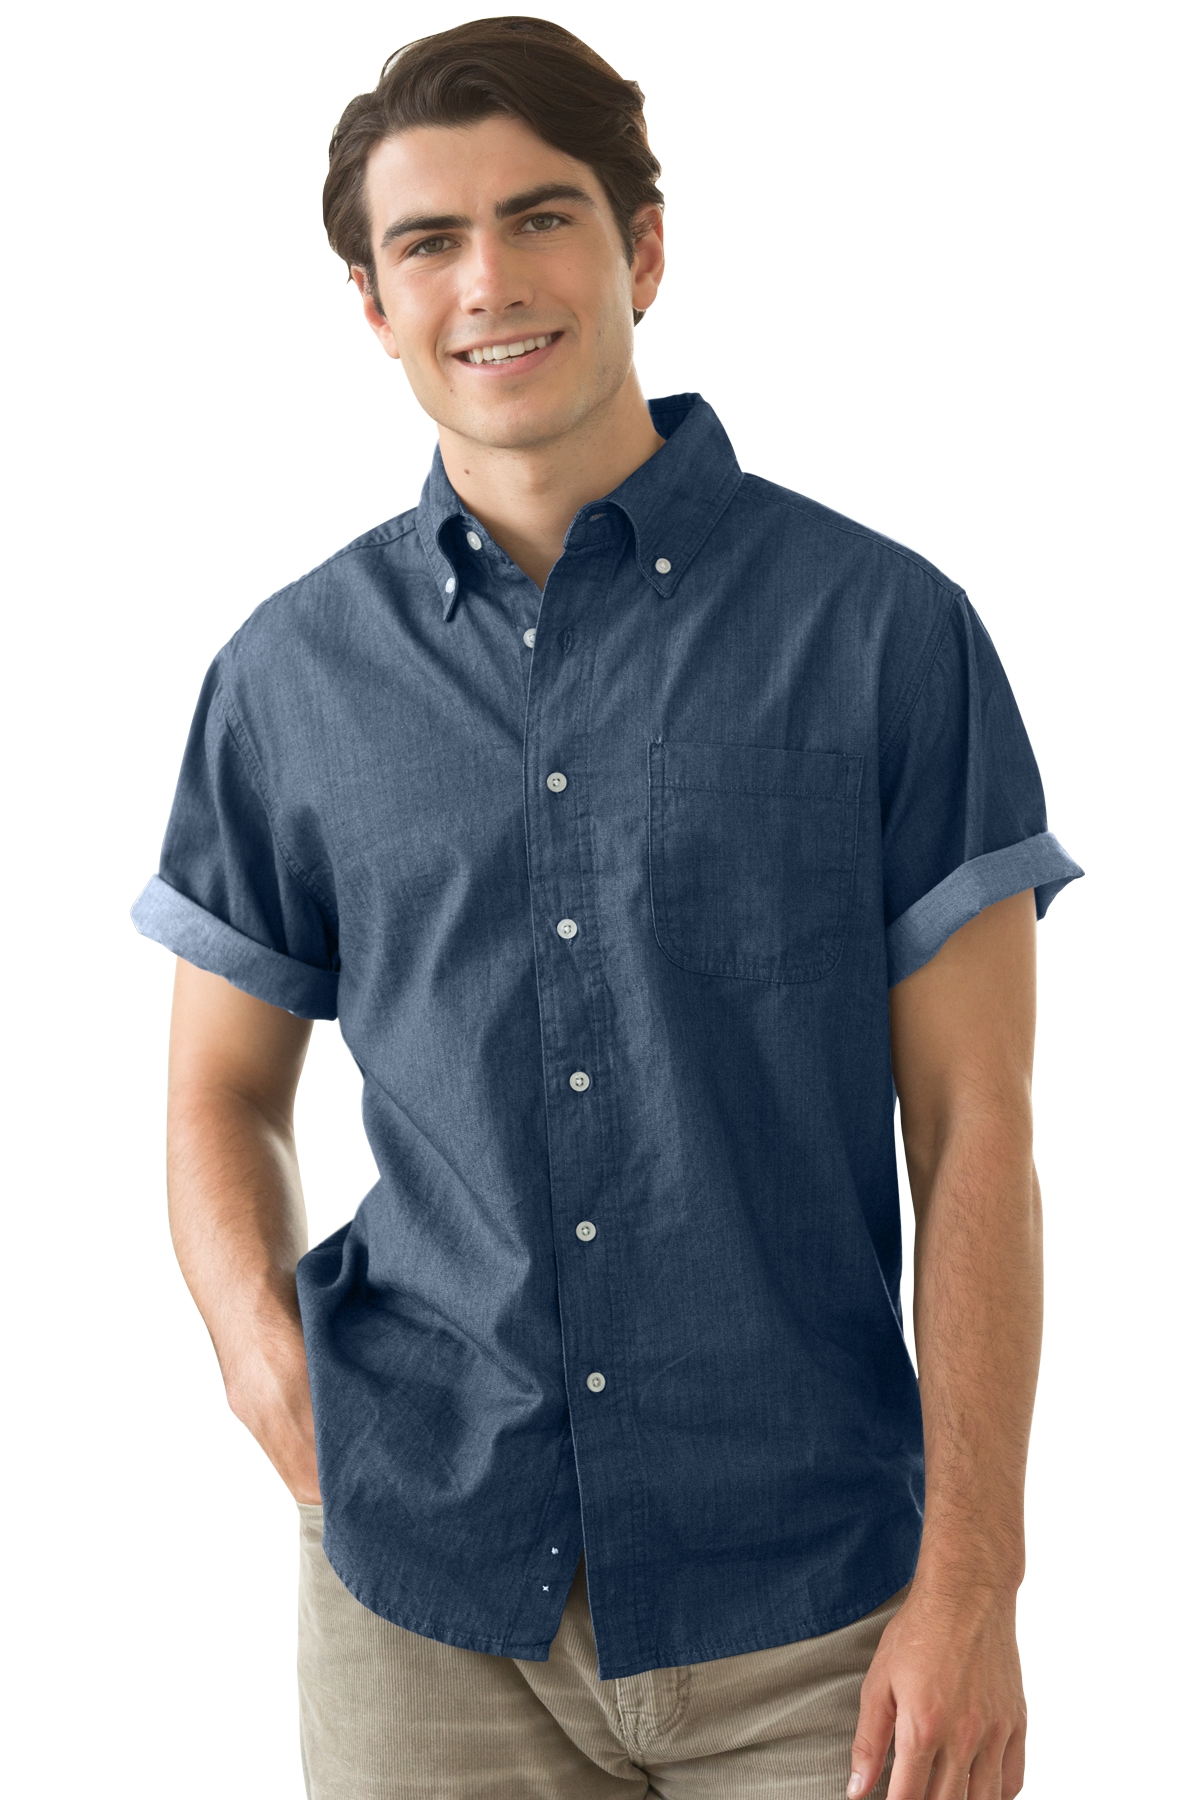 Vantage 1977S - Men's Short-Sleeve Hudson Denim Shirt